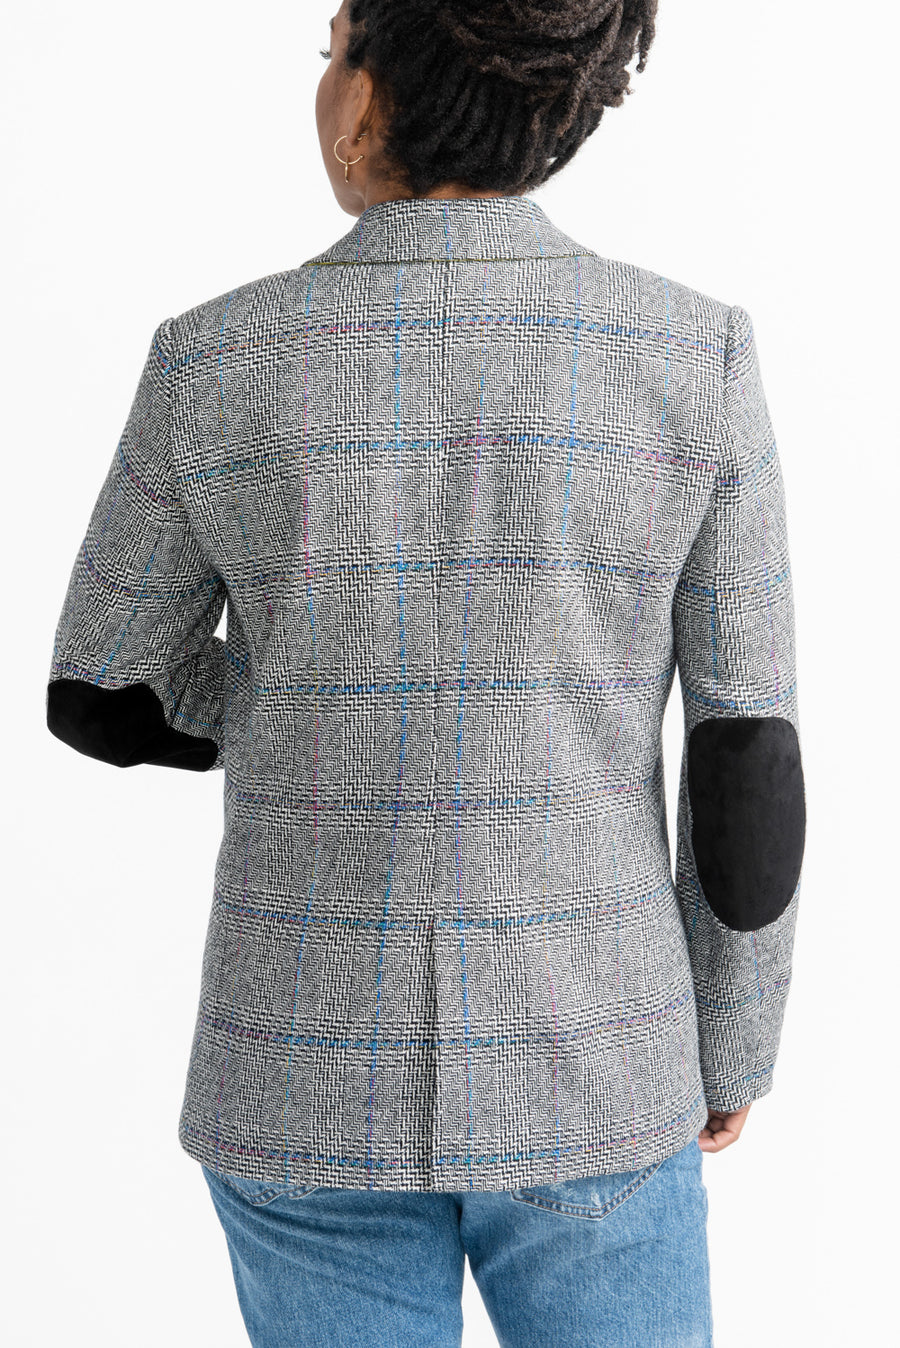 Jasika Blazer Pattern // Tailored Jacket Pattern // Closet Core Patterns